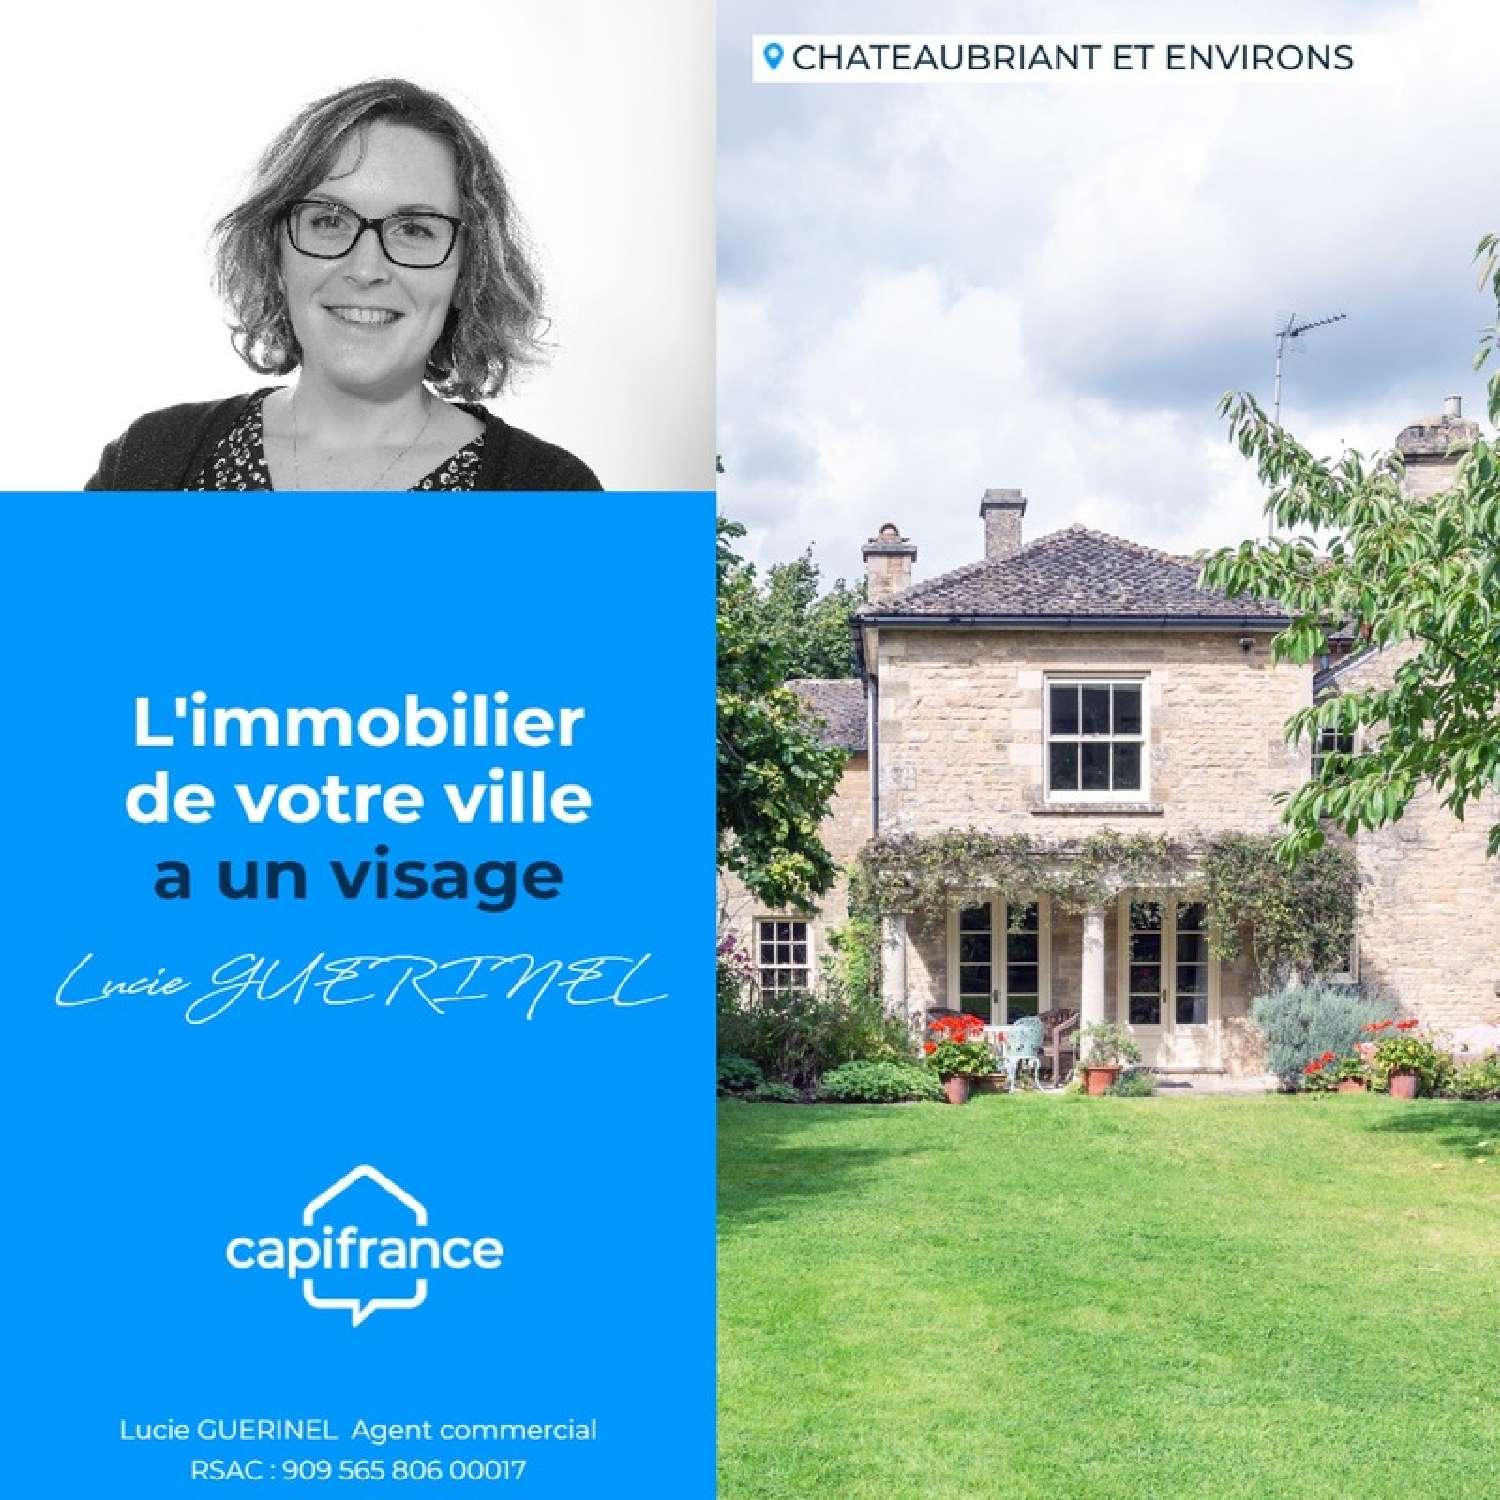  kaufen Grundstück Châteaubriant Loire-Atlantique 1